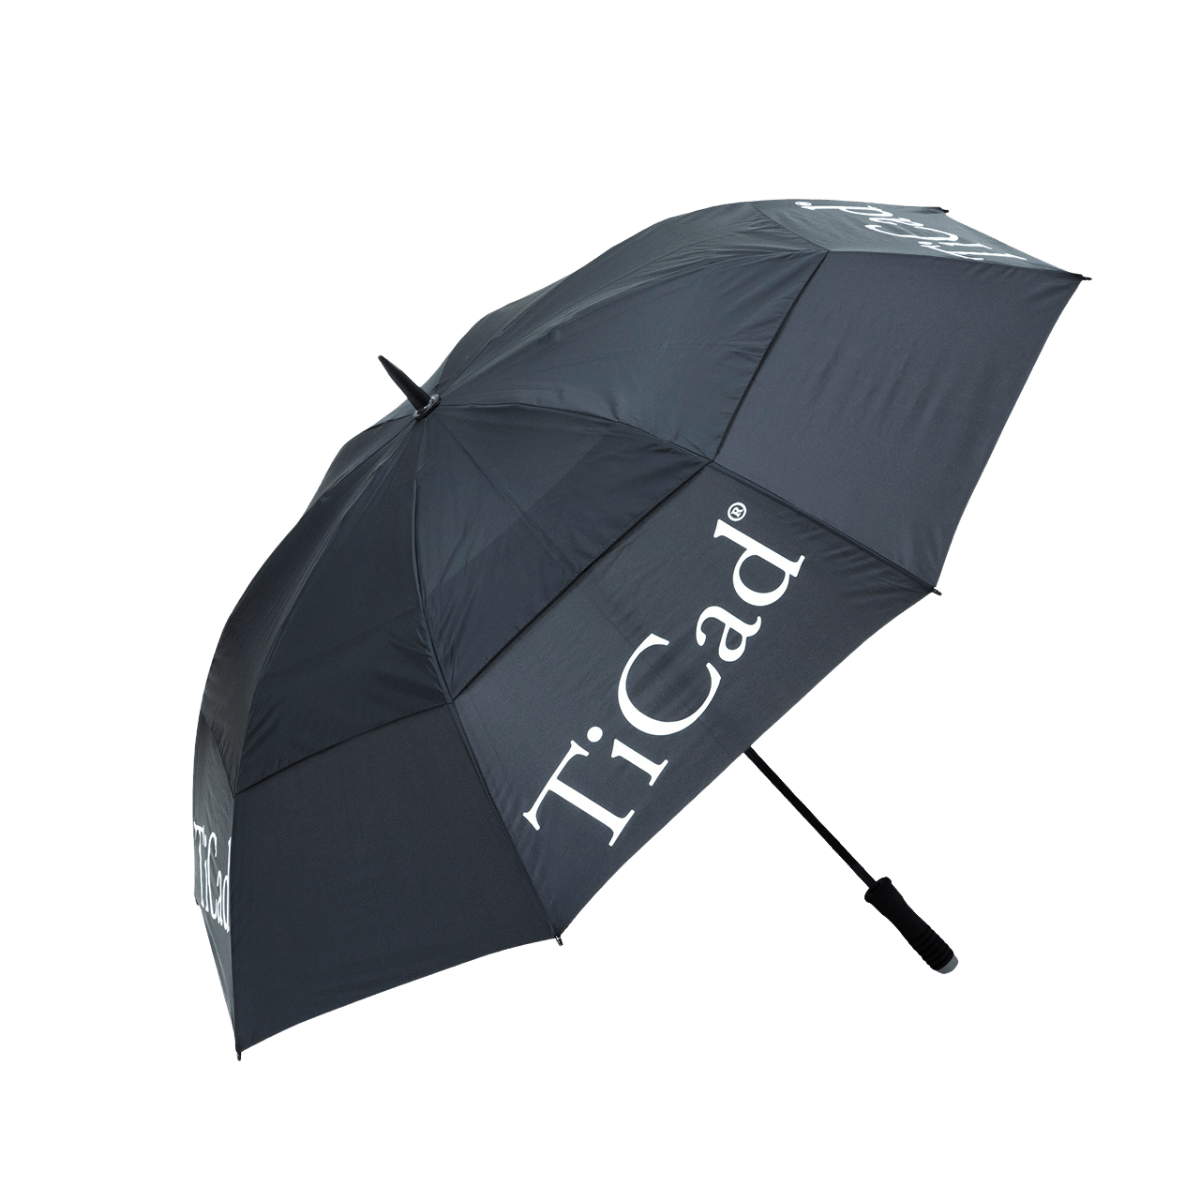 TiCad golf umbrella WINDBUSTER 